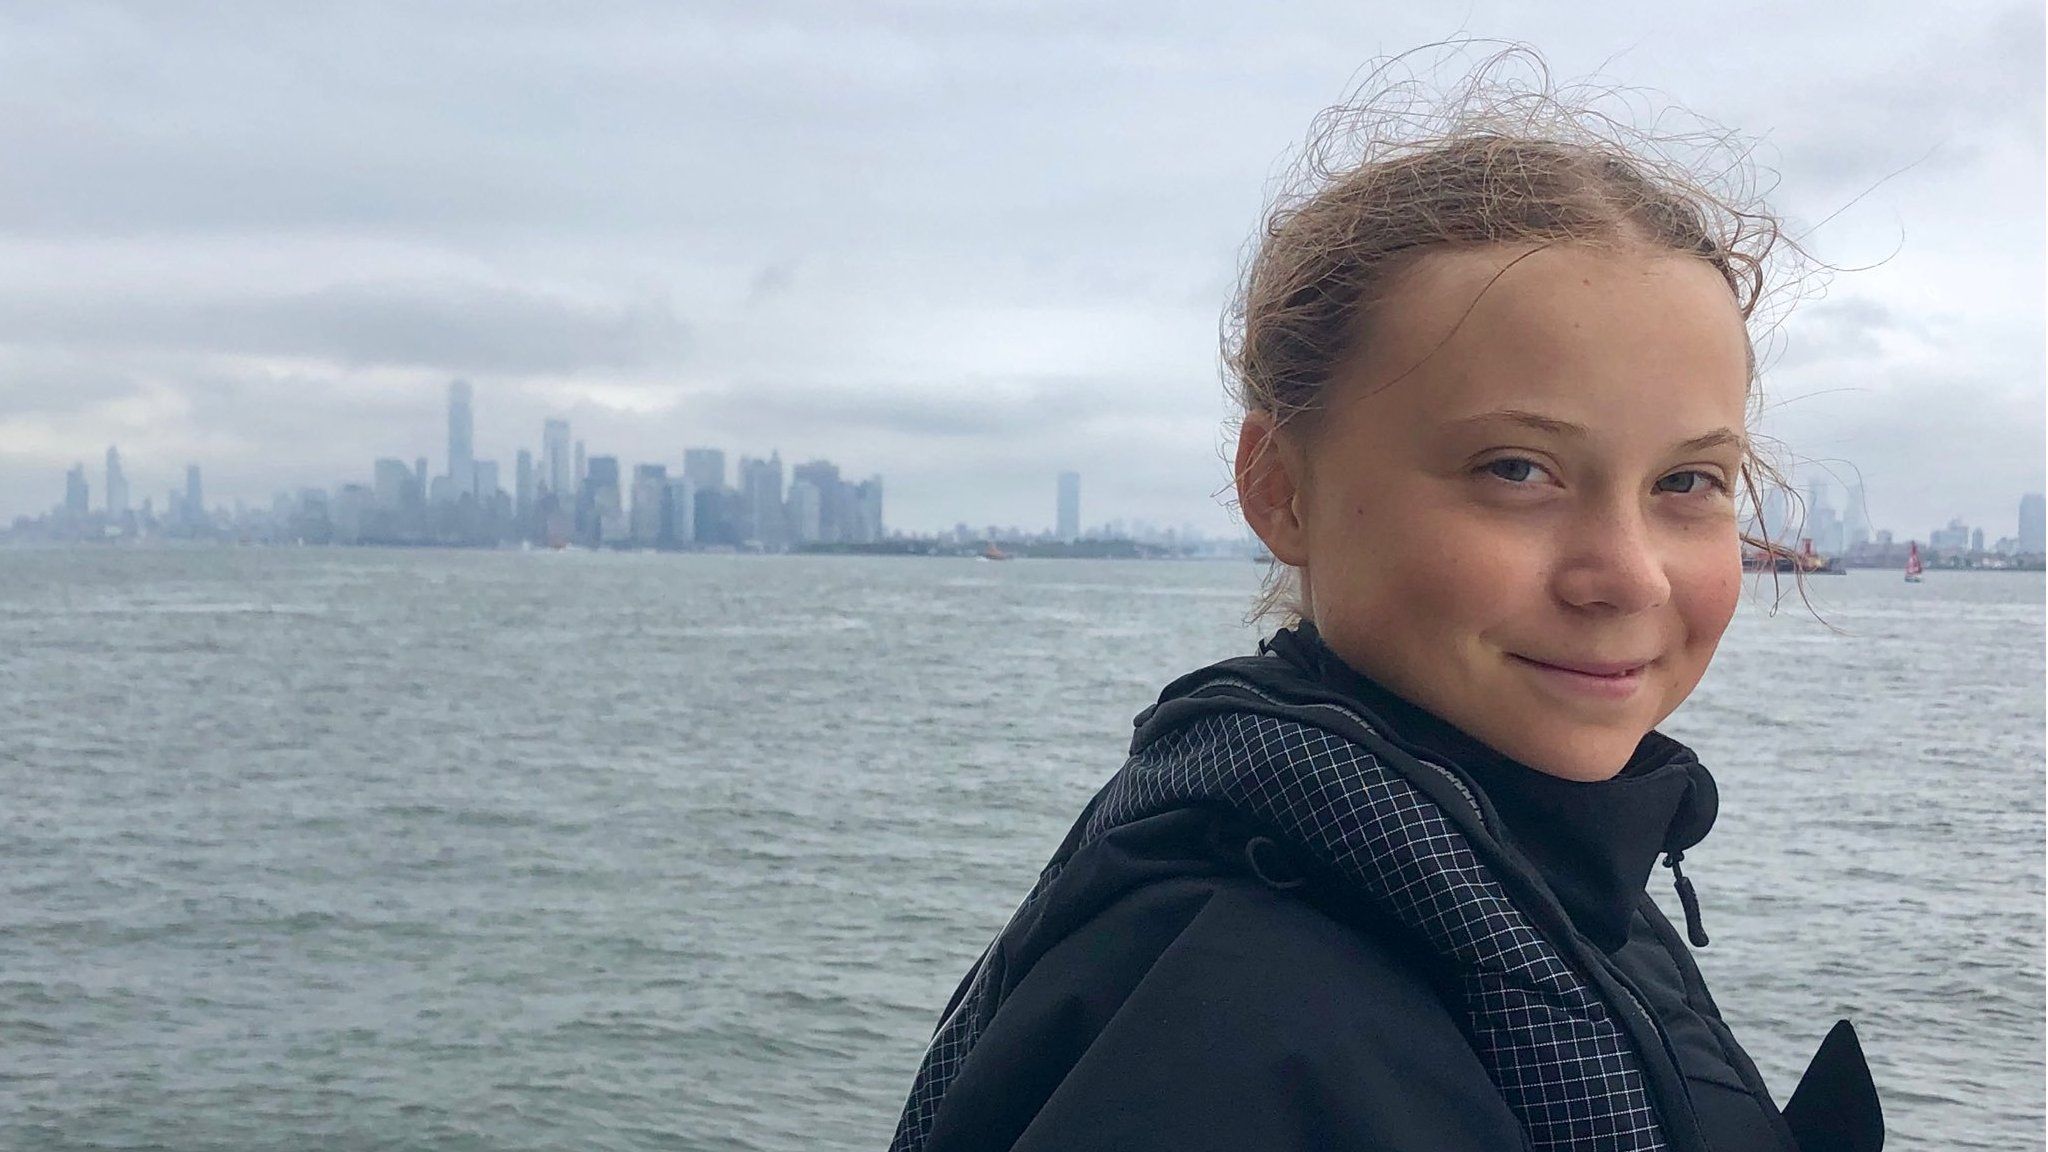 Greta Thunberg approaching Manhattan